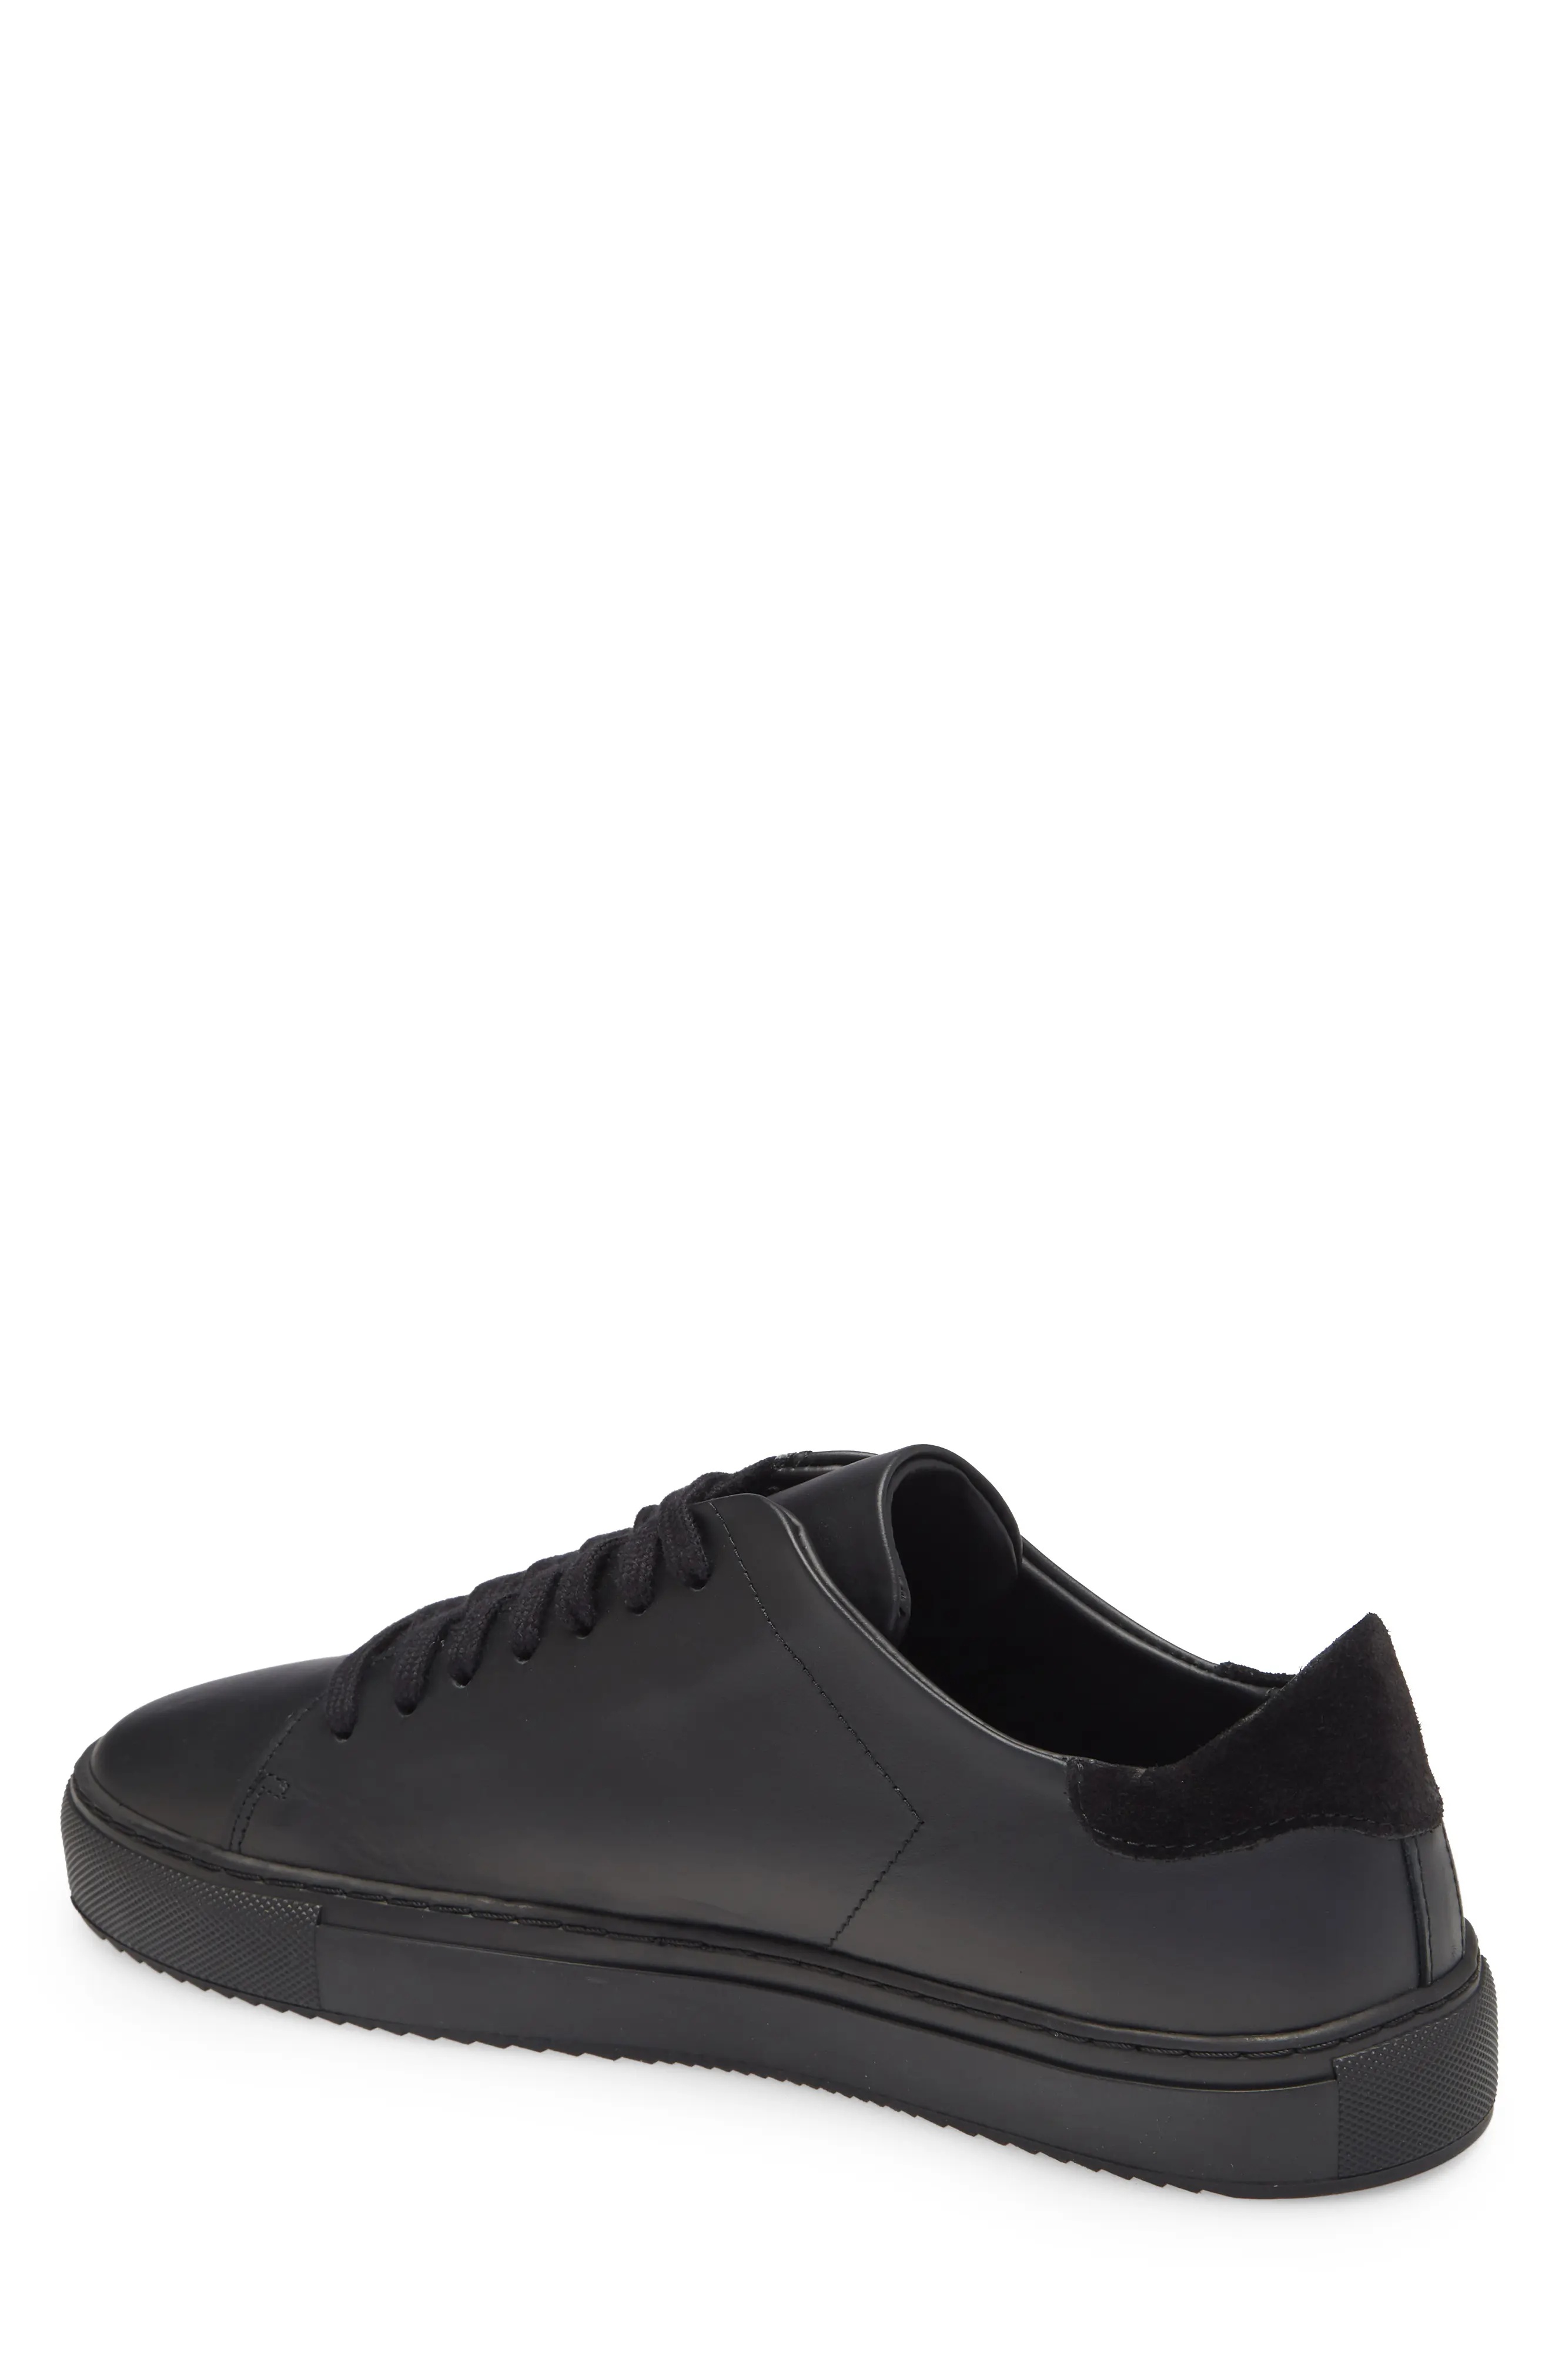 Clean 90 Sneaker in Black/Black Leather - 2